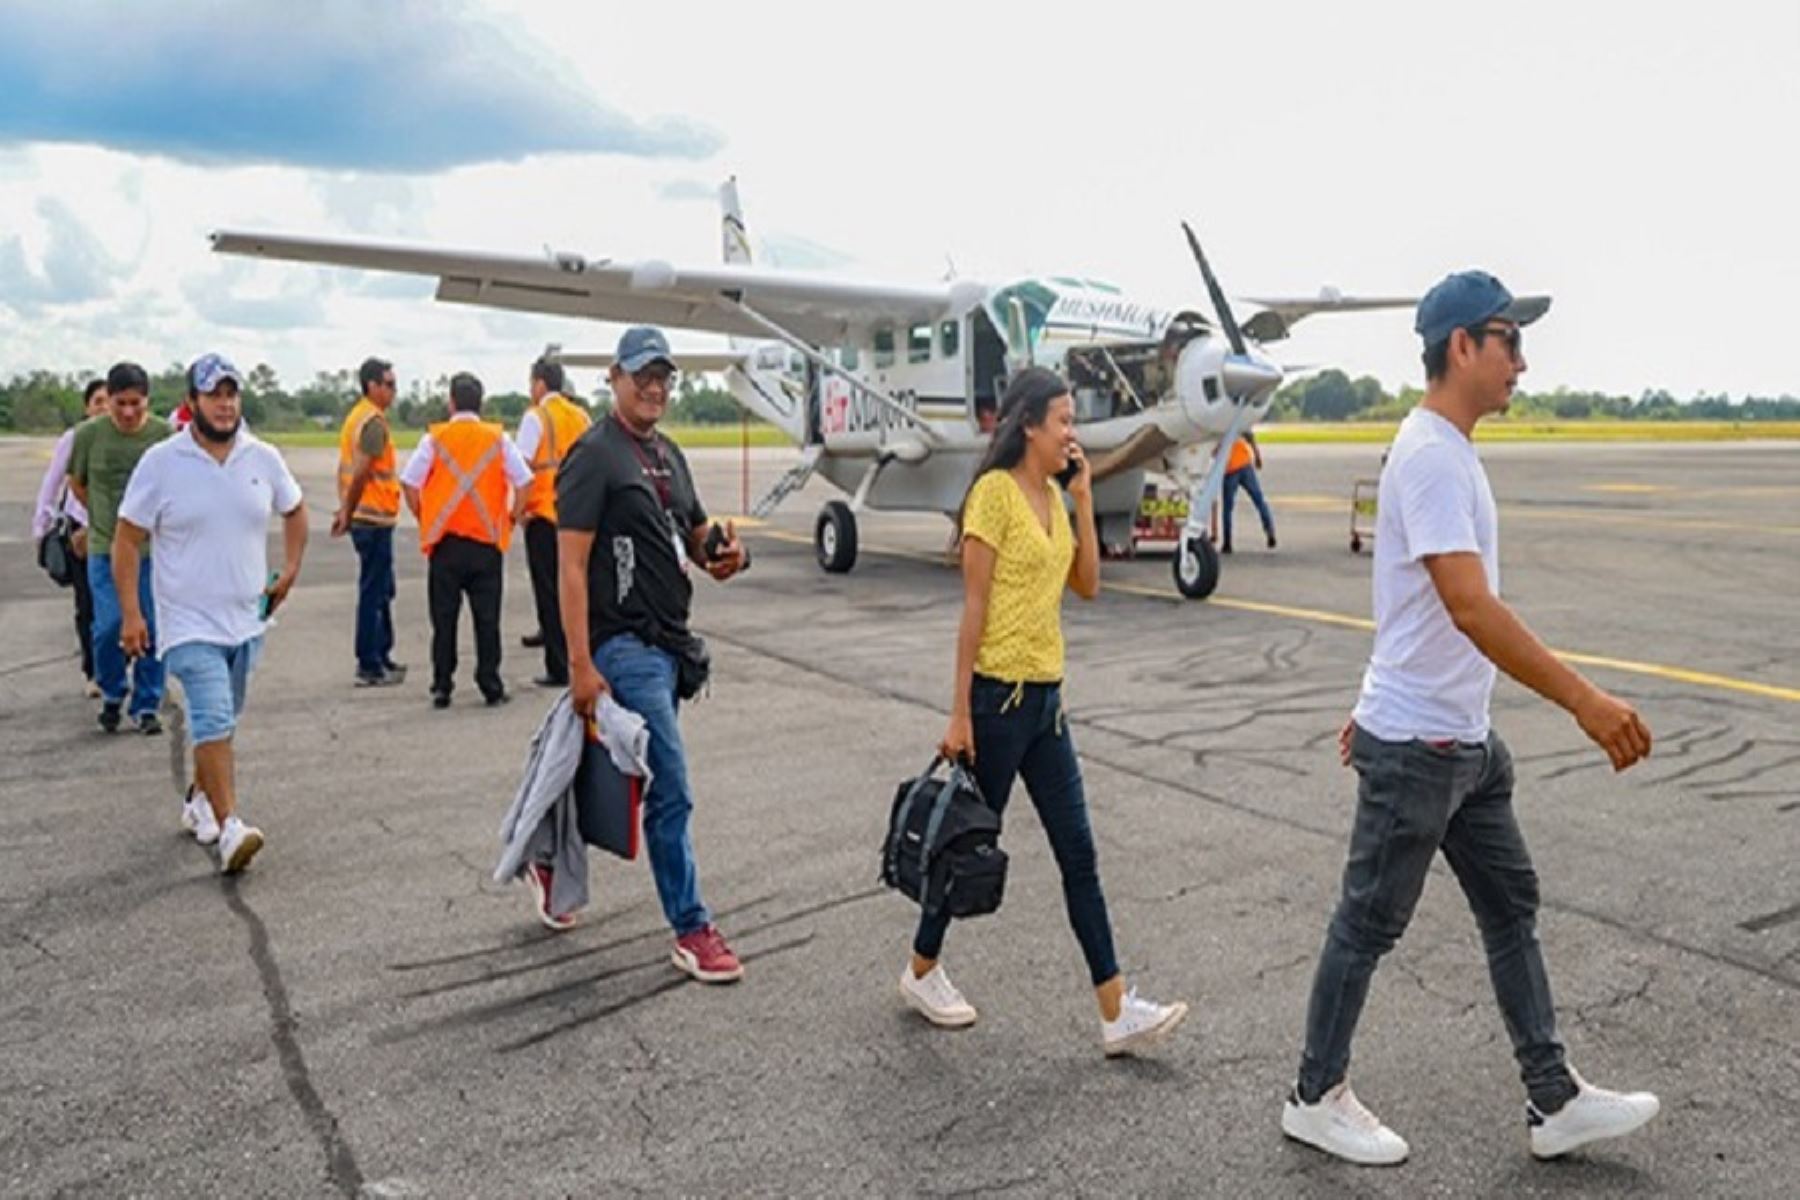 Facilitan que ciudadanos se movilicen desde los aeropuertos de Iquitos, Pucallpa y Tarapoto hacia 11 localidades de frontera. Cortesía MTC